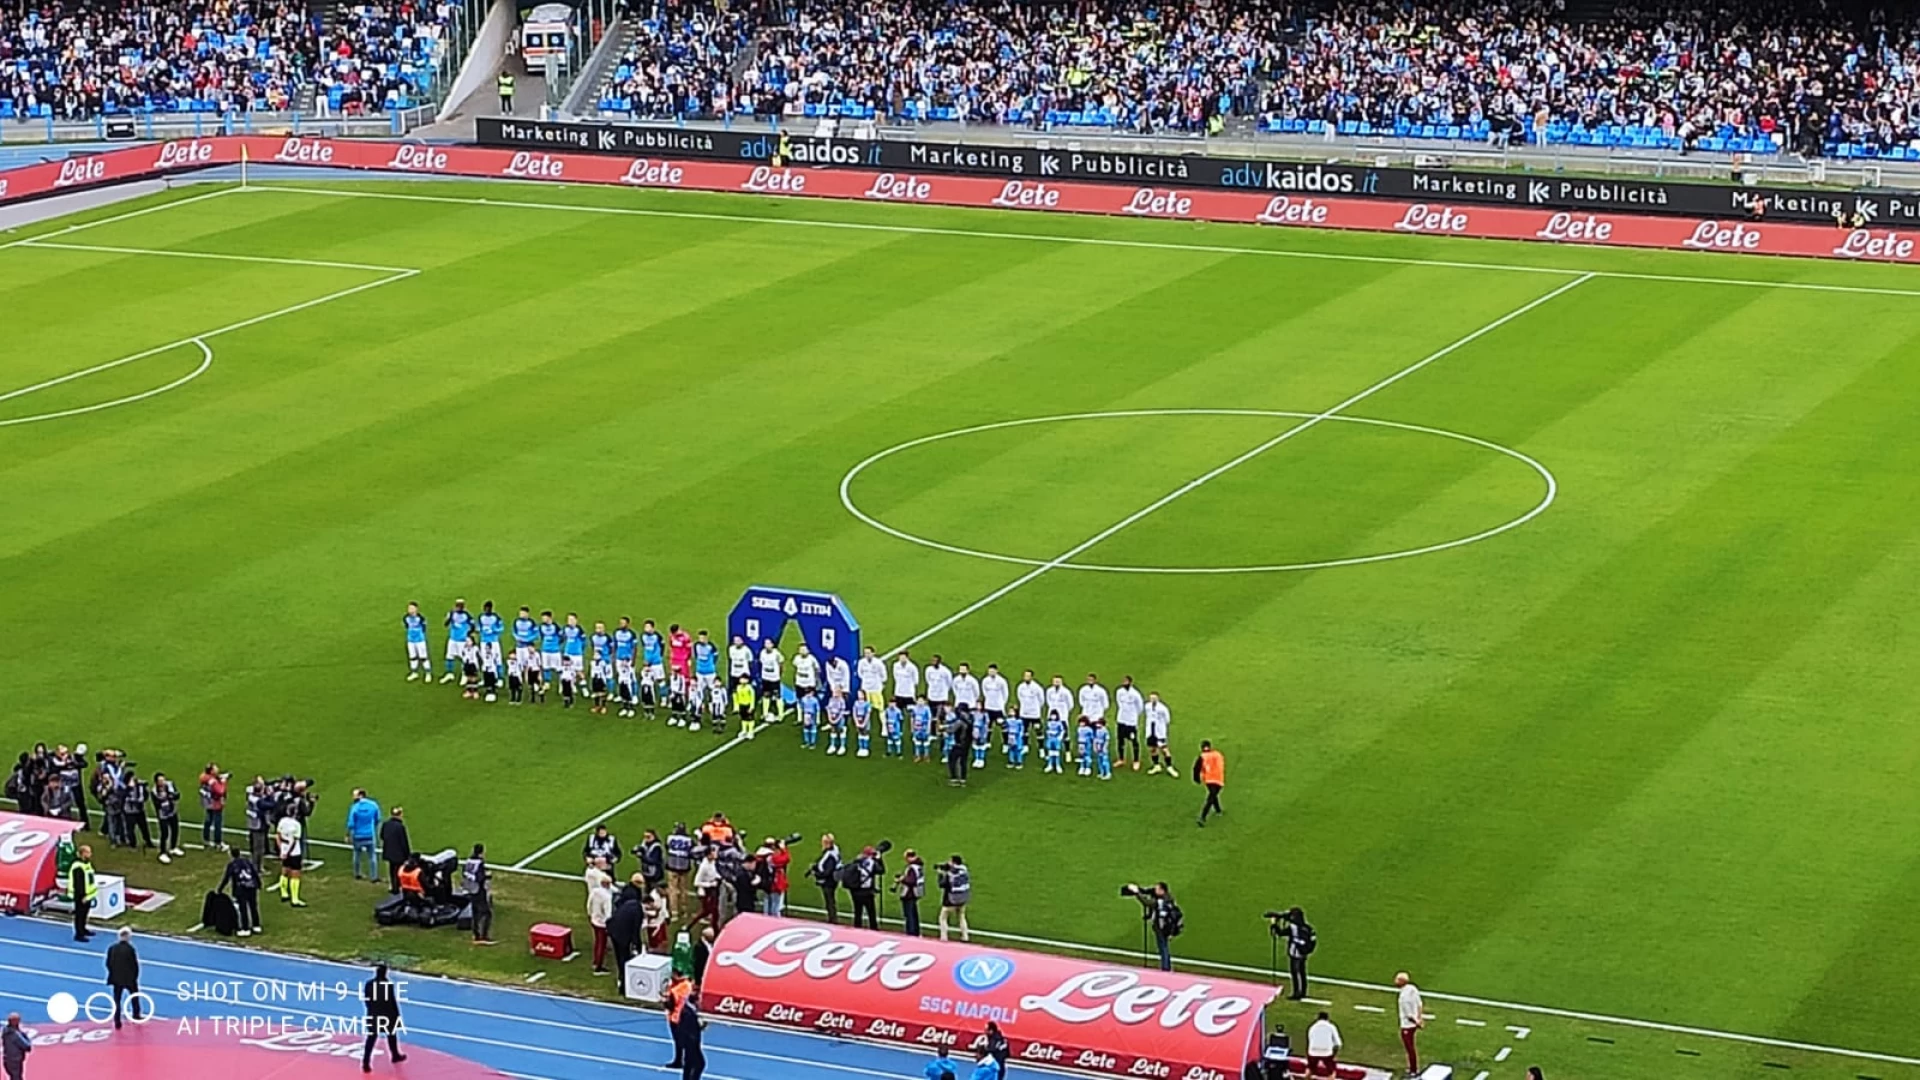 Napoli-Udinese: finisce 3-2 al Maradona. Azzurri stellari stendono i friulani con Osihmen, Zielinski e Elmas. Tabellino e cronaca del match